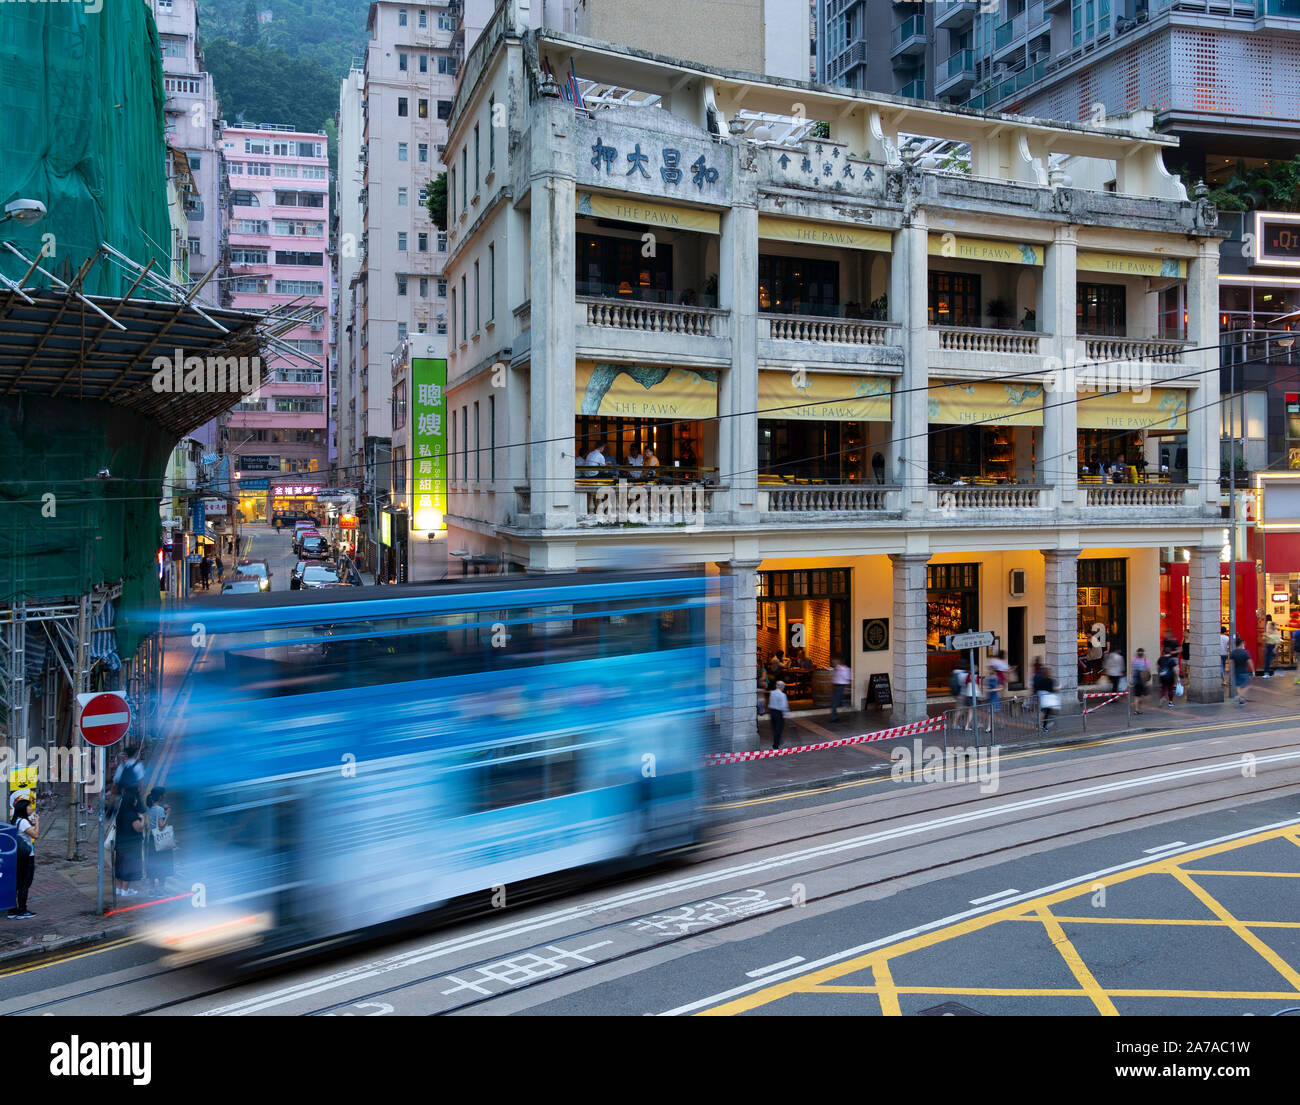 El tranvía pasa antiguo edificio colonial ahora restaurantes y bar llamado el peón en Wanchai, Hong Kong Foto de stock